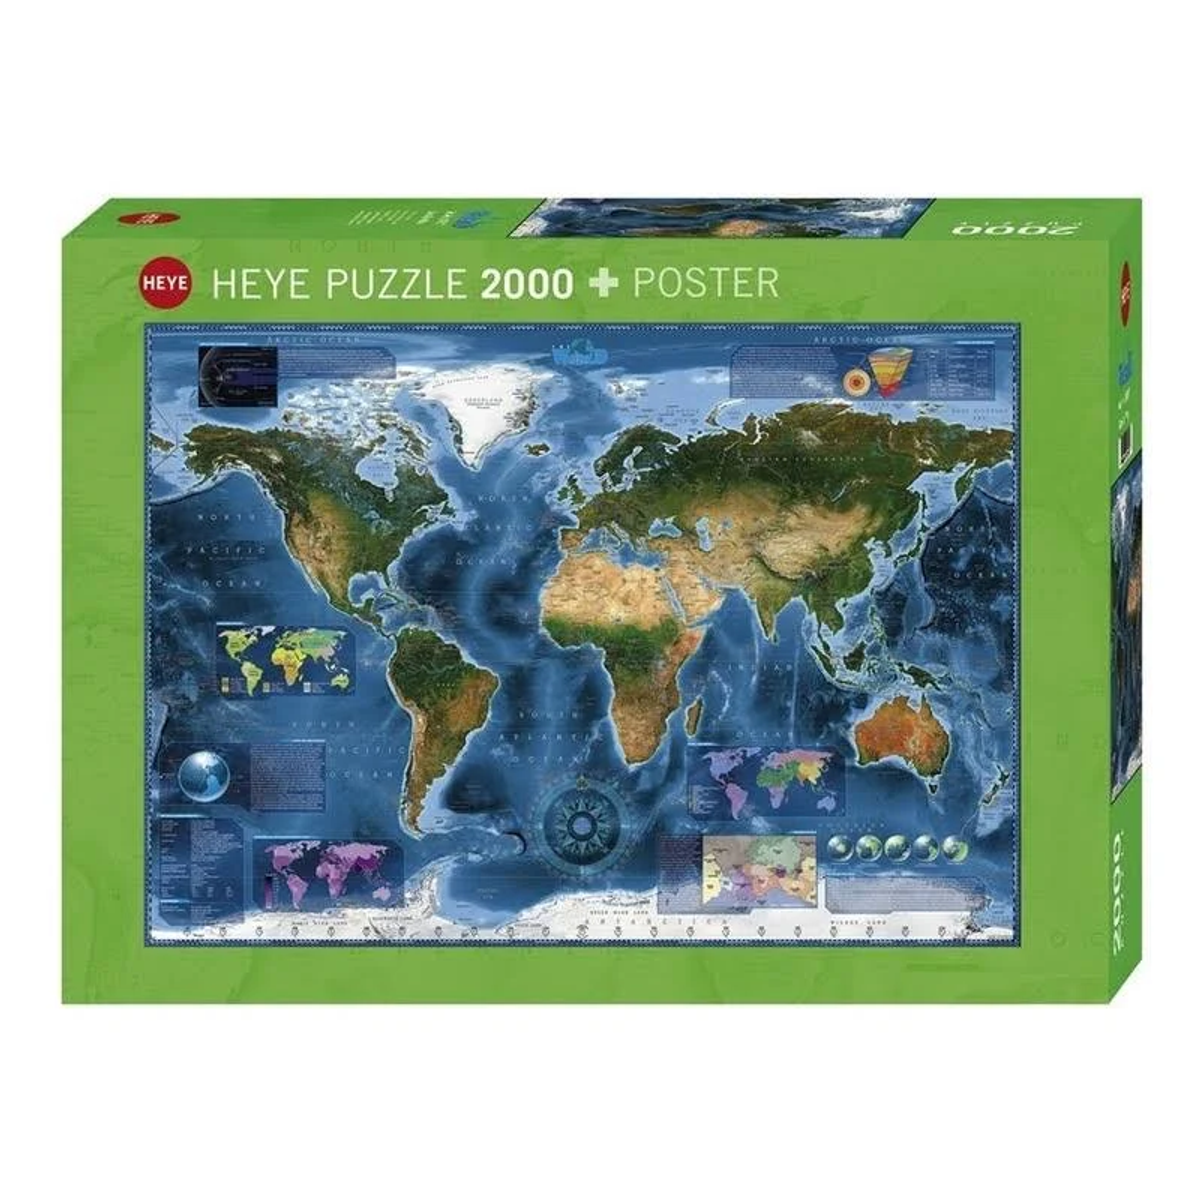 HEYE Puzzle 29797